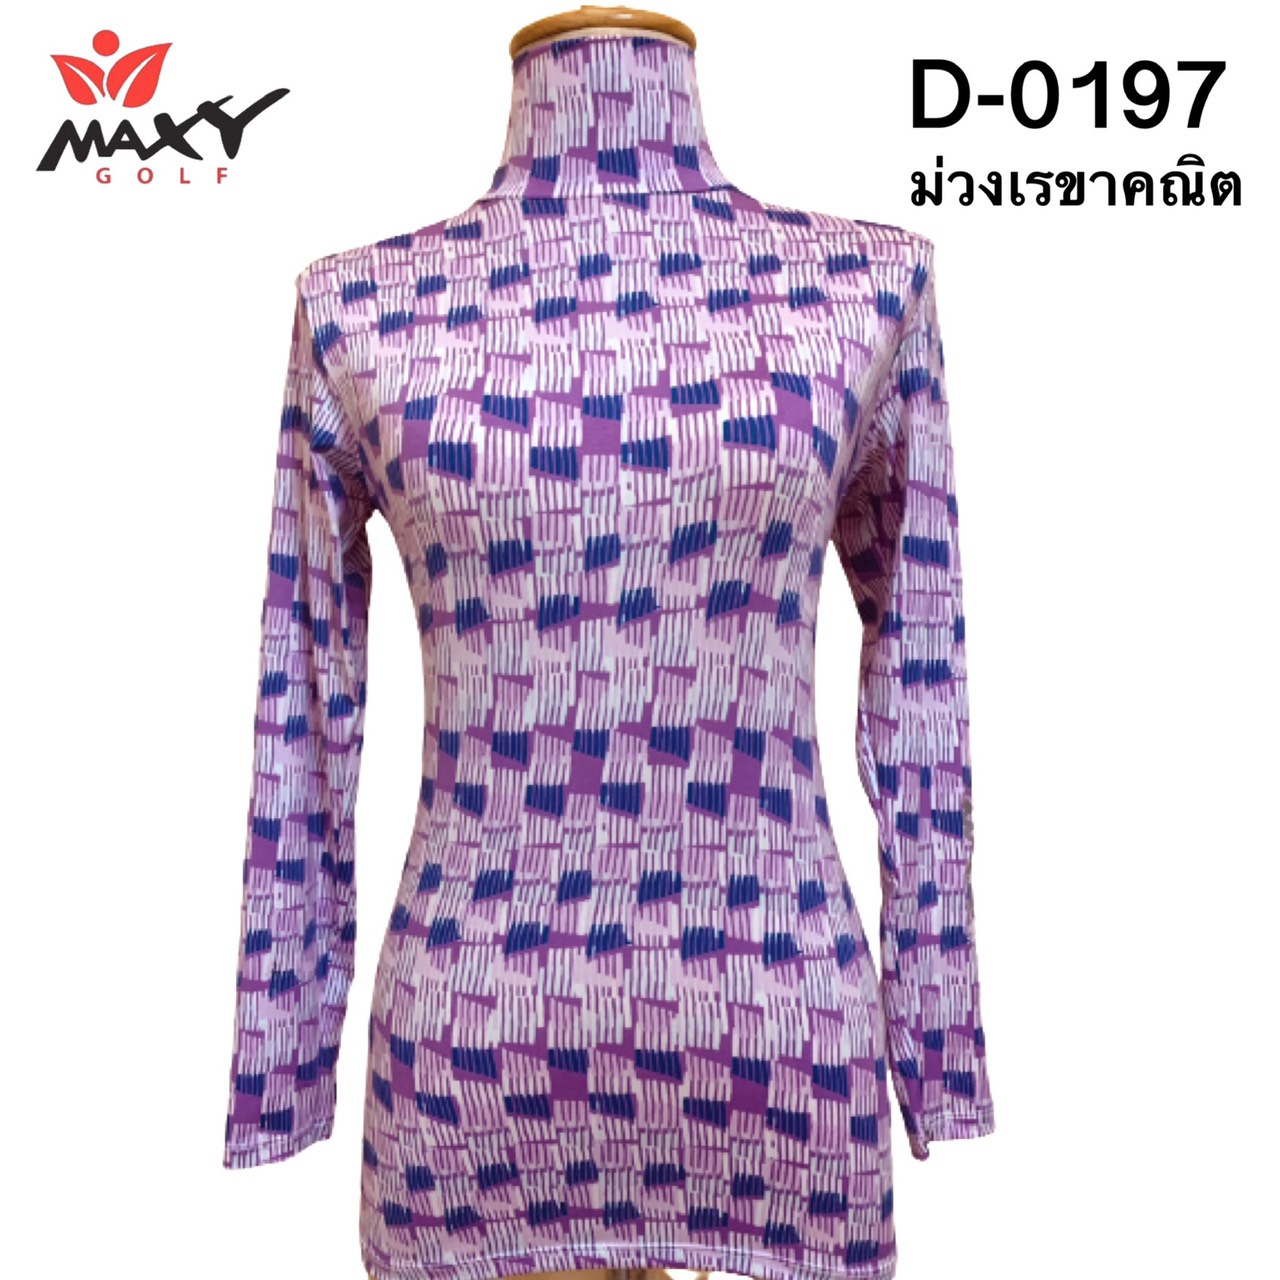 เสื้อบอดี้ฟิตกันแดด(คอเต่า)สำหรับผู้หญิง ยี่ห้อ MAXY GOLF (รหัส D-0197 ลายม่วงเรขาคณิต)